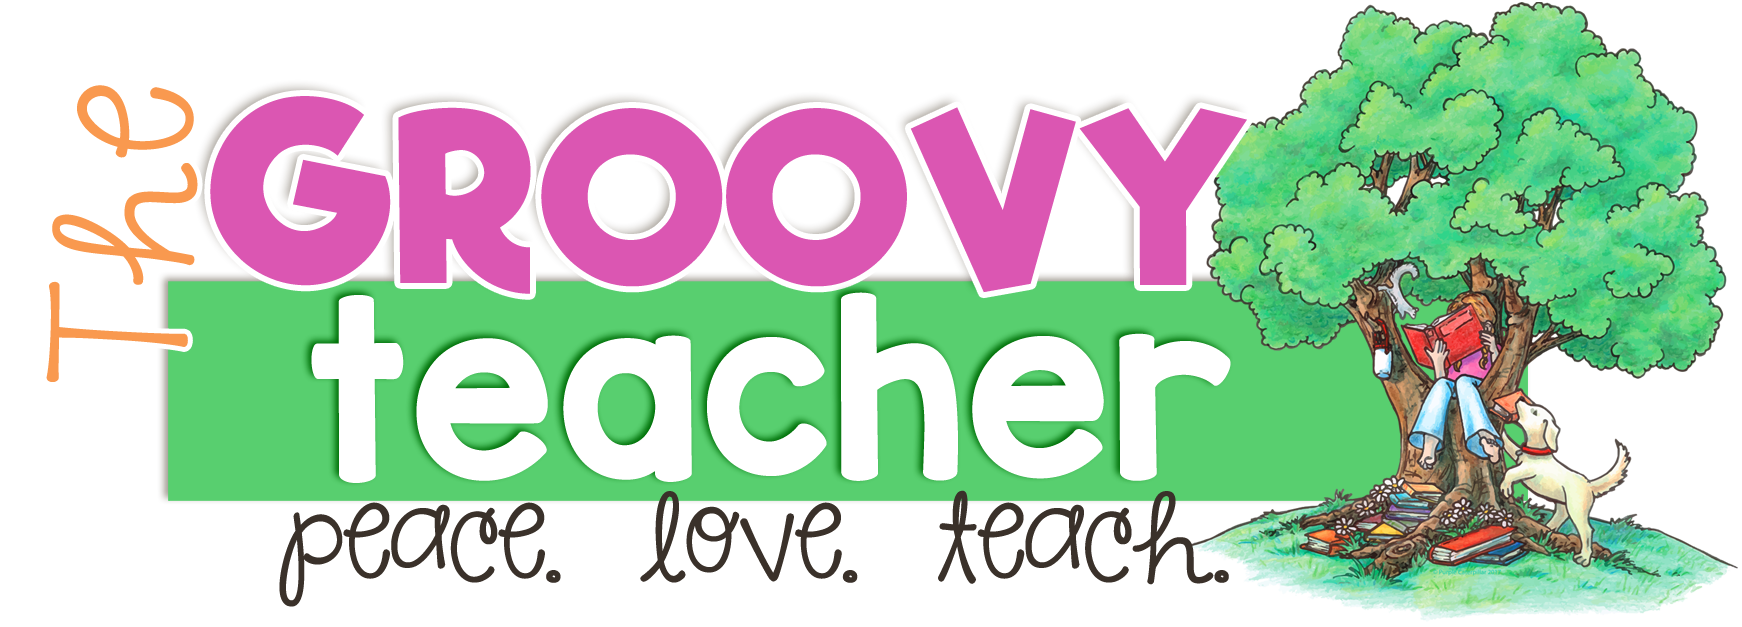 groovy teacher header